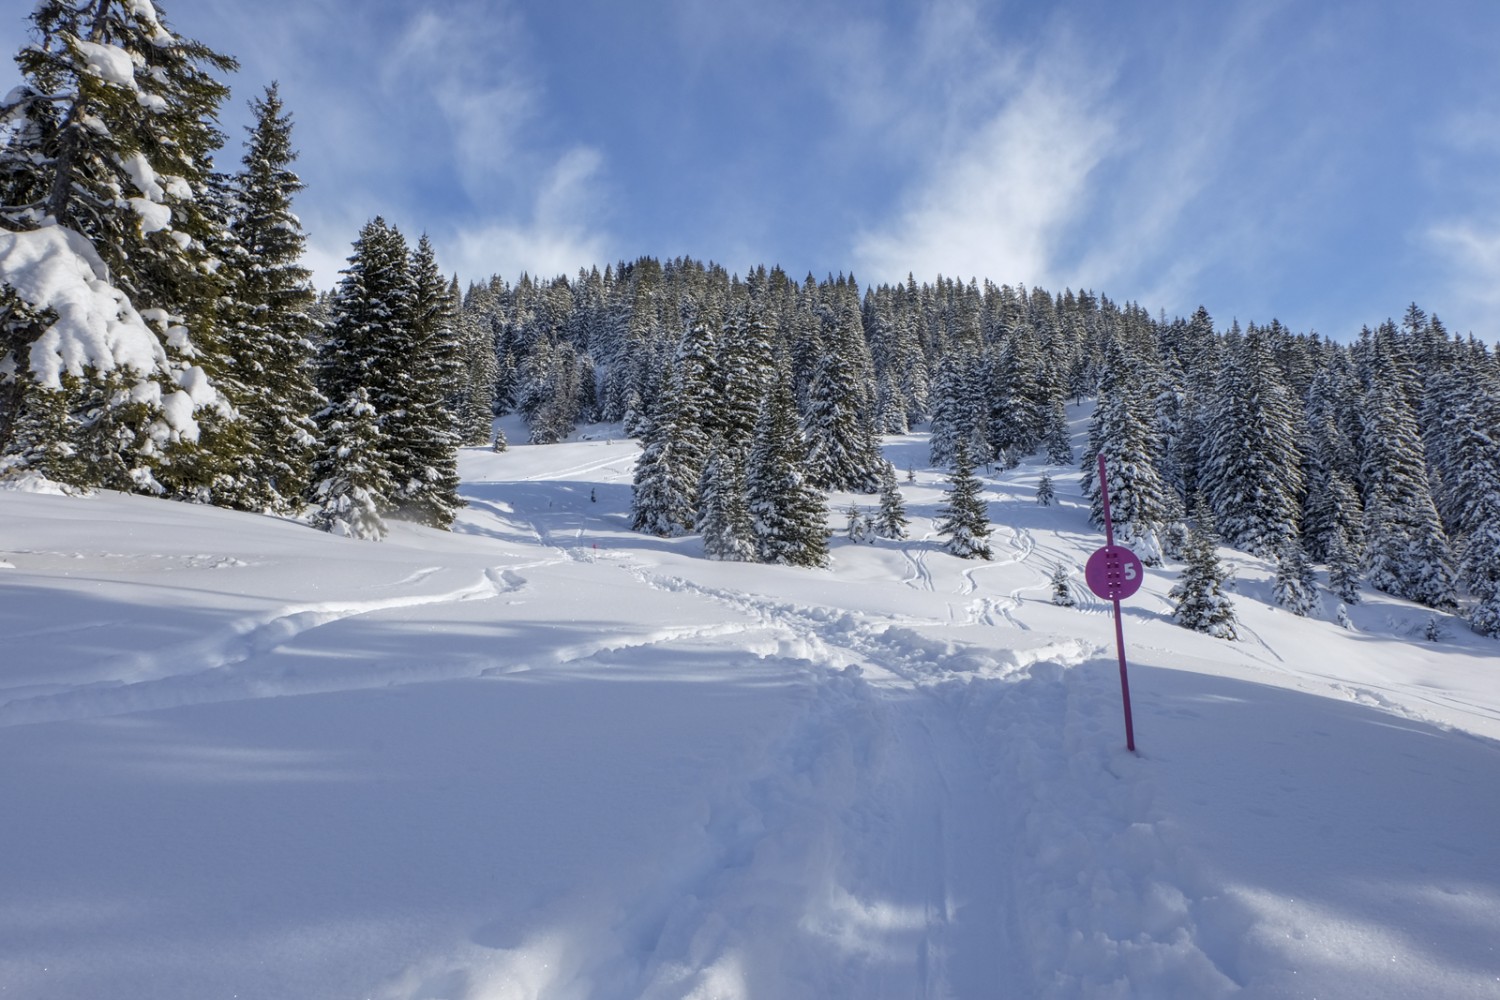 Frisch verschneite Landschaft, aber mit einer schönen Spur. So macht Schneeschuhwandern Spass. Bild: Elsbeth Flüeler